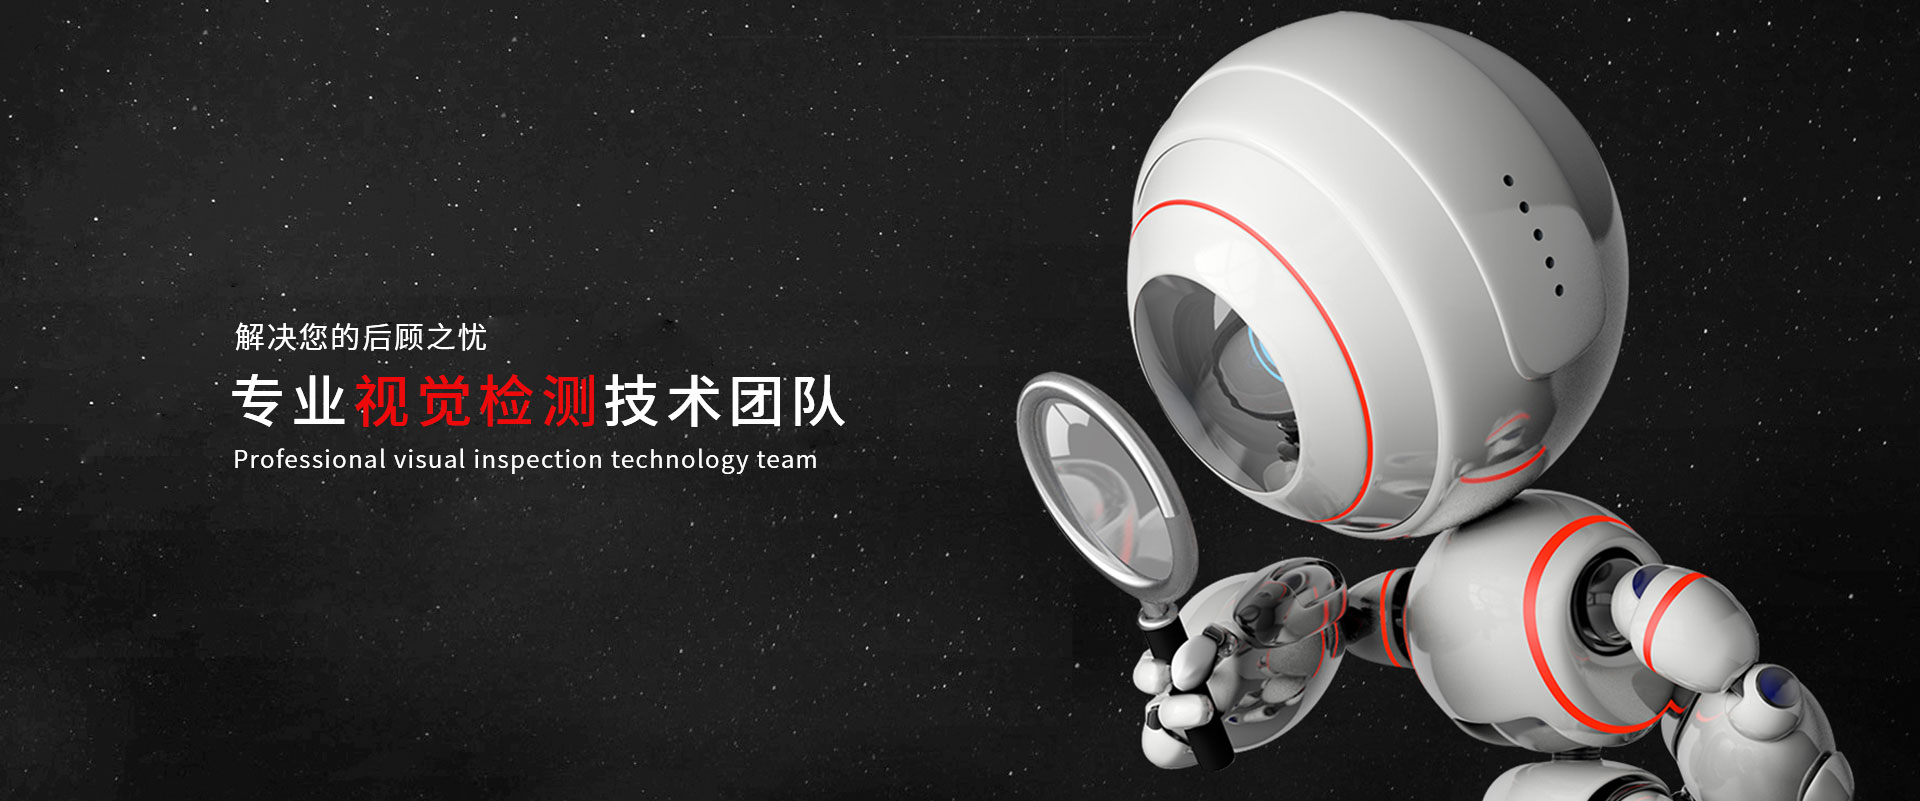 上海工业视觉检测设备公司